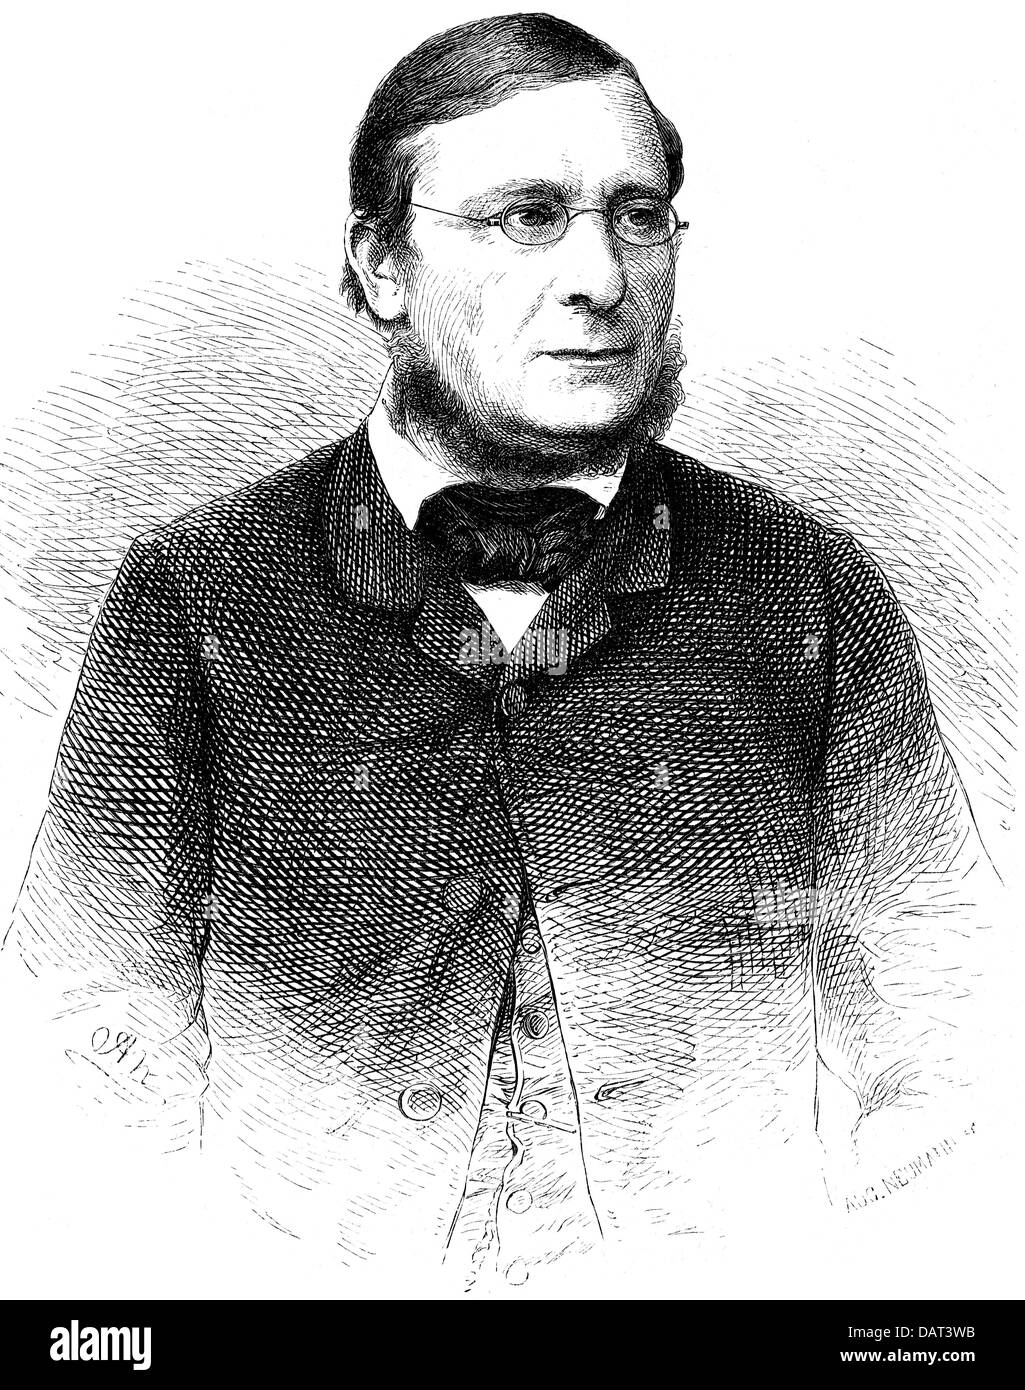 Schenkel, Daniel, 21.12.1813 - 19.5.1885, teologo svizzero, ritratto, incisione in legno, circa 19th secolo, Foto Stock